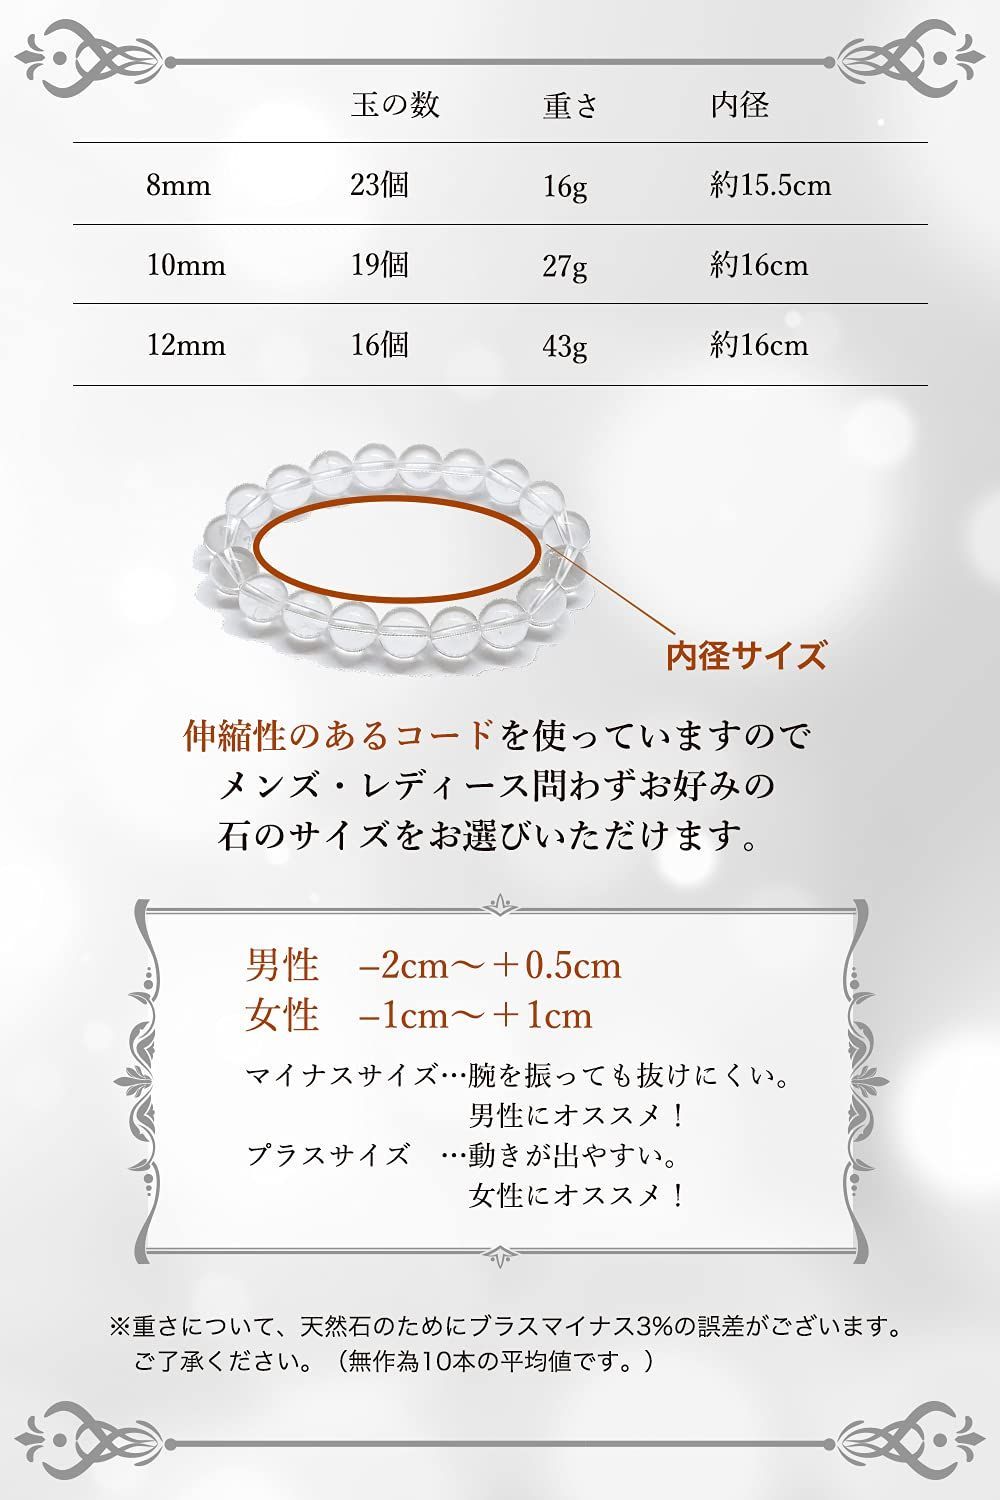 贅沢 hibikurasu水晶 クリスタル パワーストーン ブレスレット 数珠 ブレス 5212.20円 アクセサリー